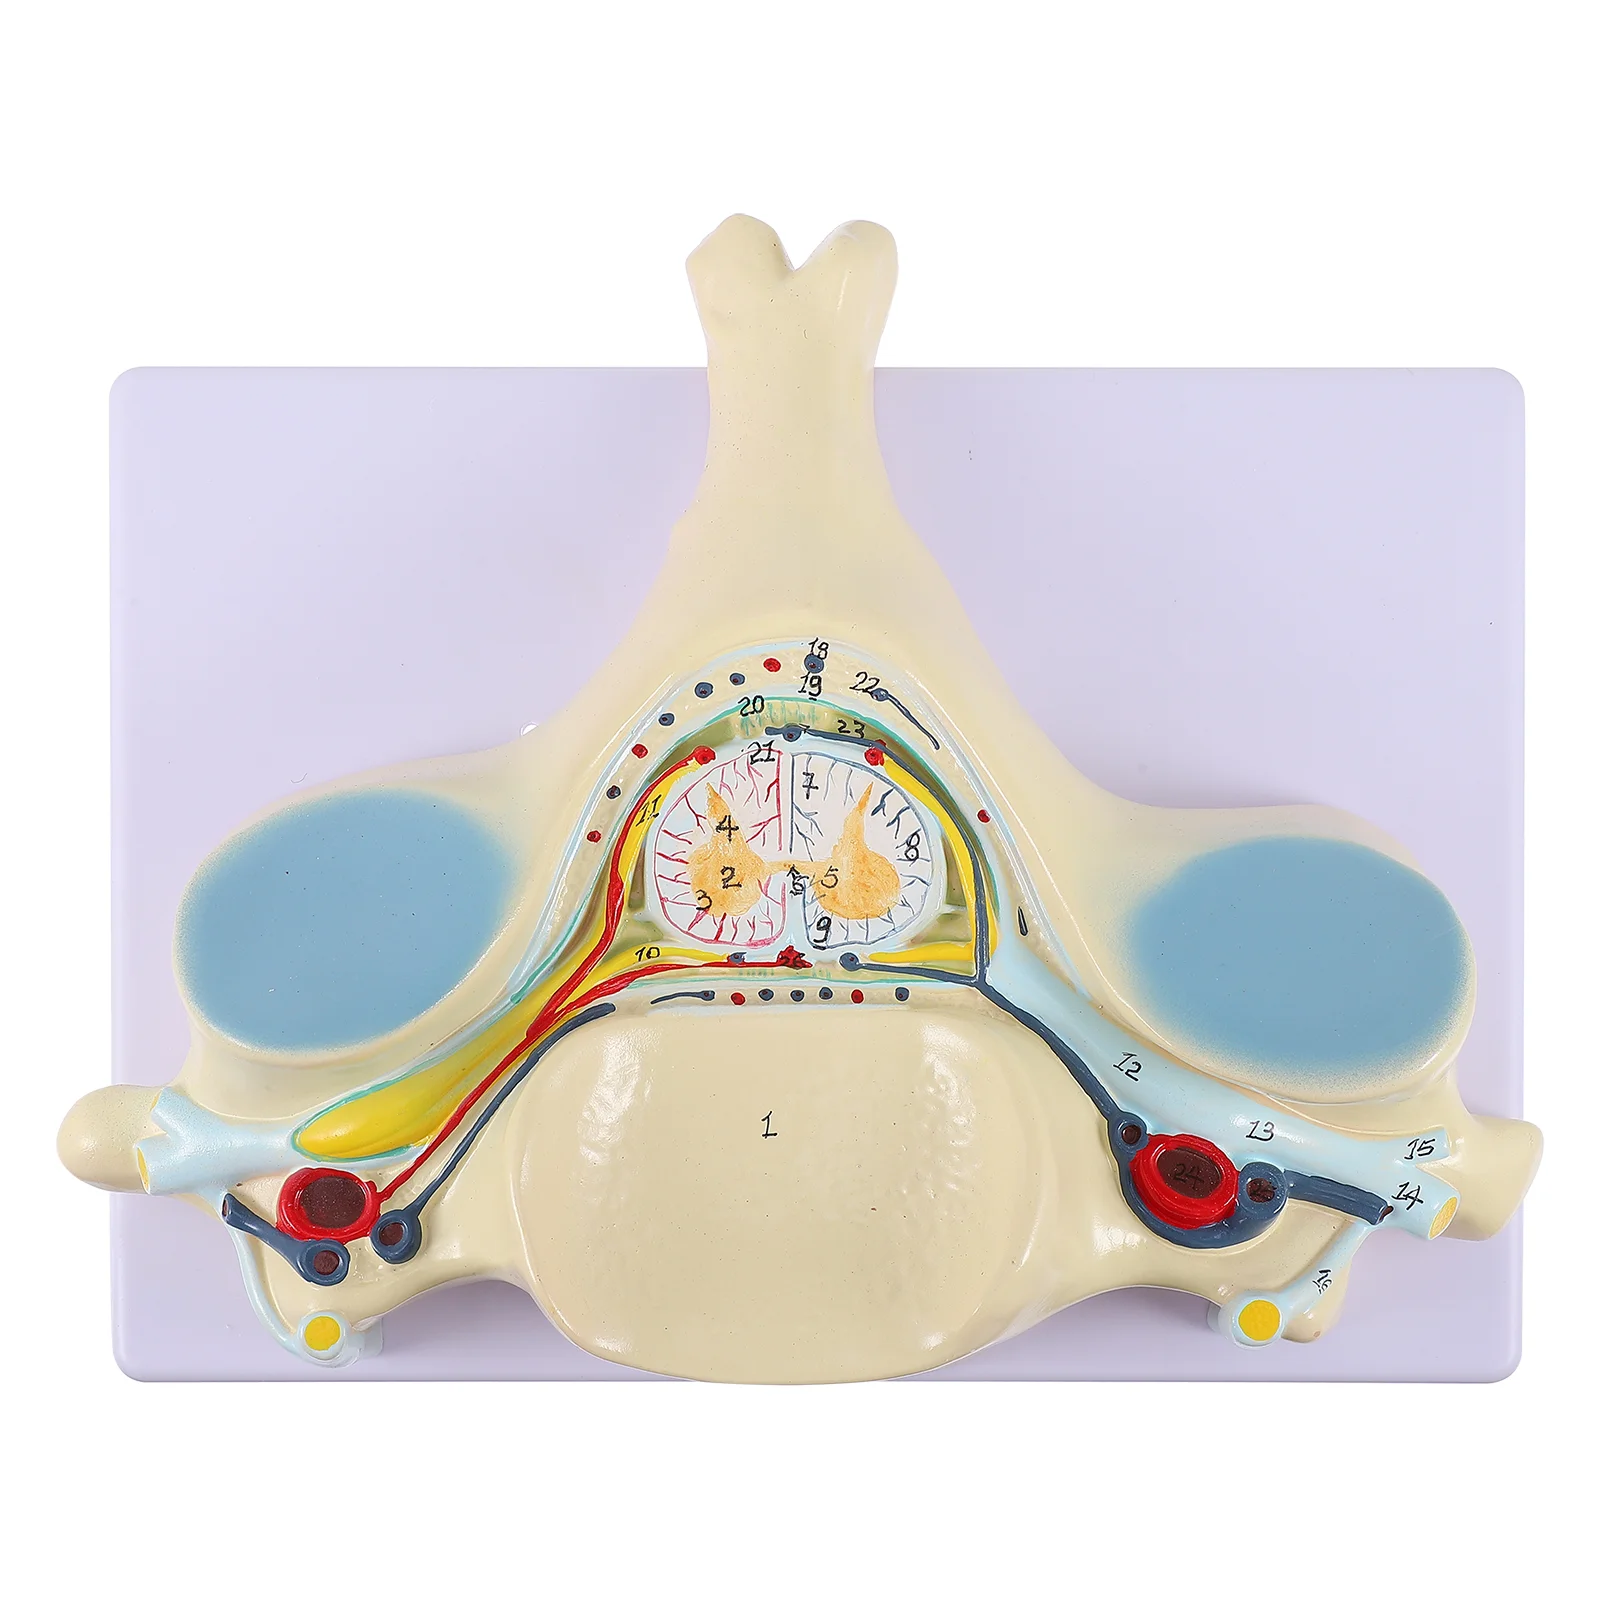 

Spinal Nerve Model Enlarged Cervical Spine Medical Teaching Tool Anatomy Mannequin Demonstration Human Body